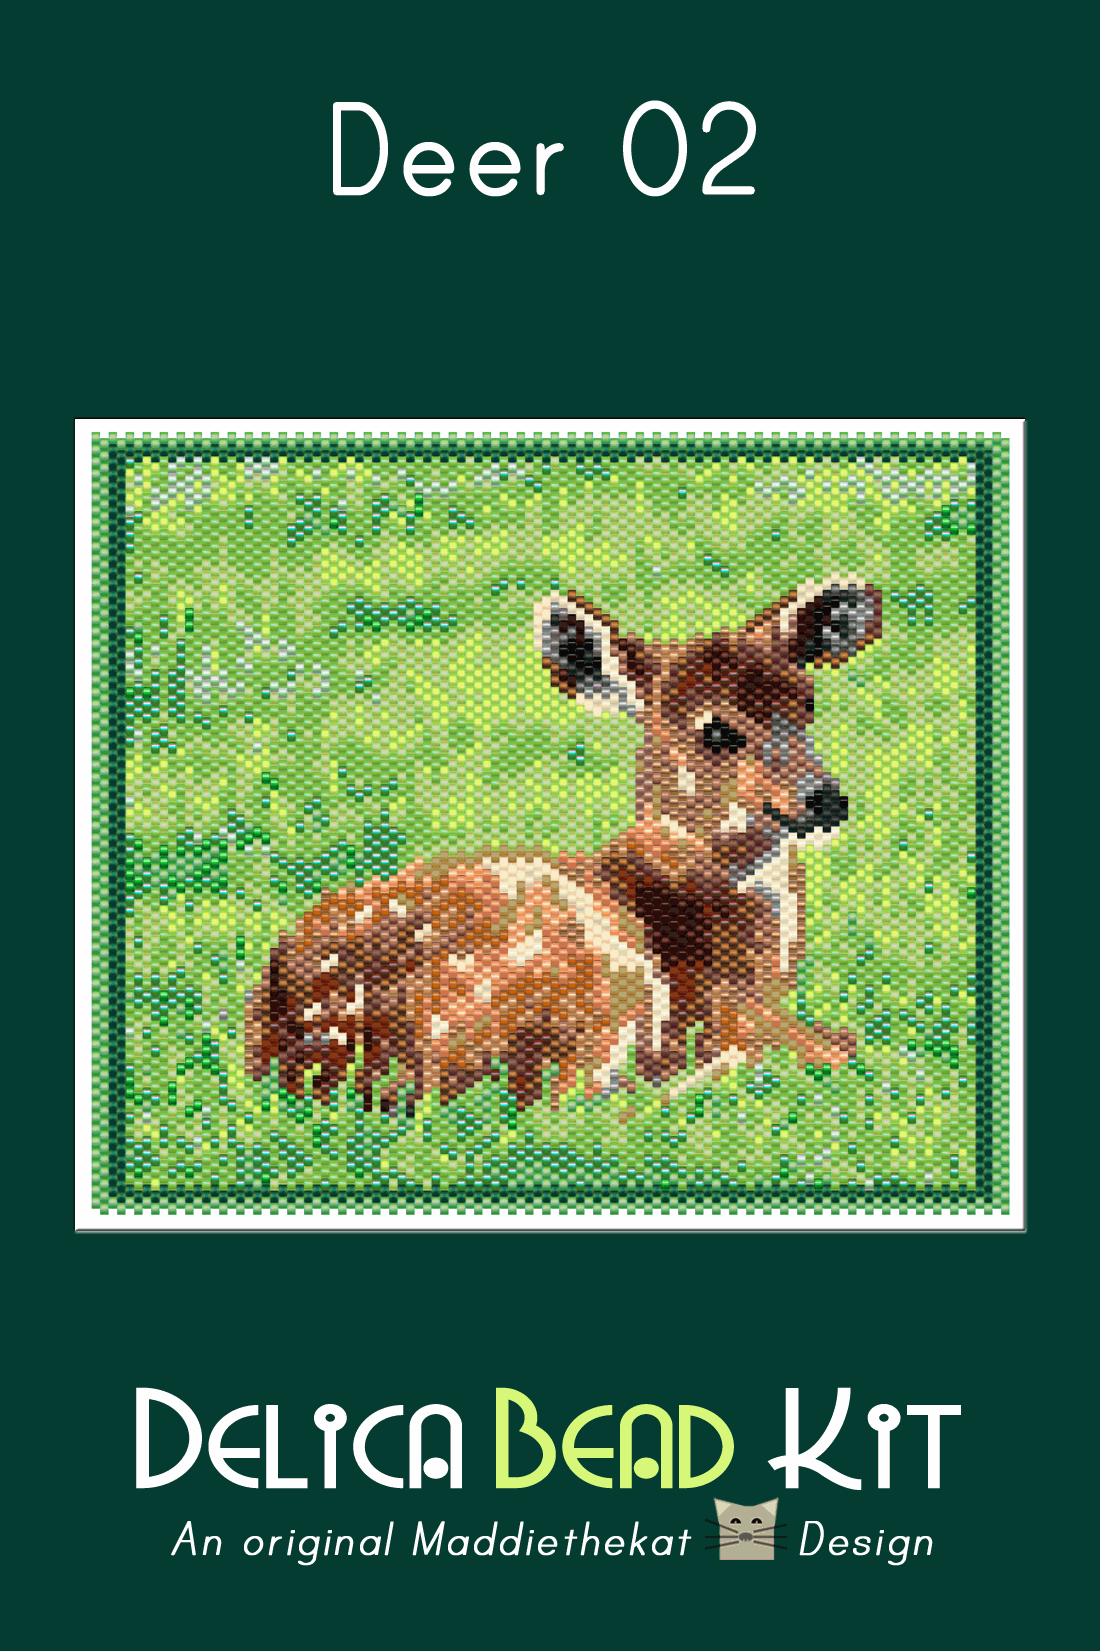 Deer 02 Larger Peyote Bead Pattern PDF or Bead Kit